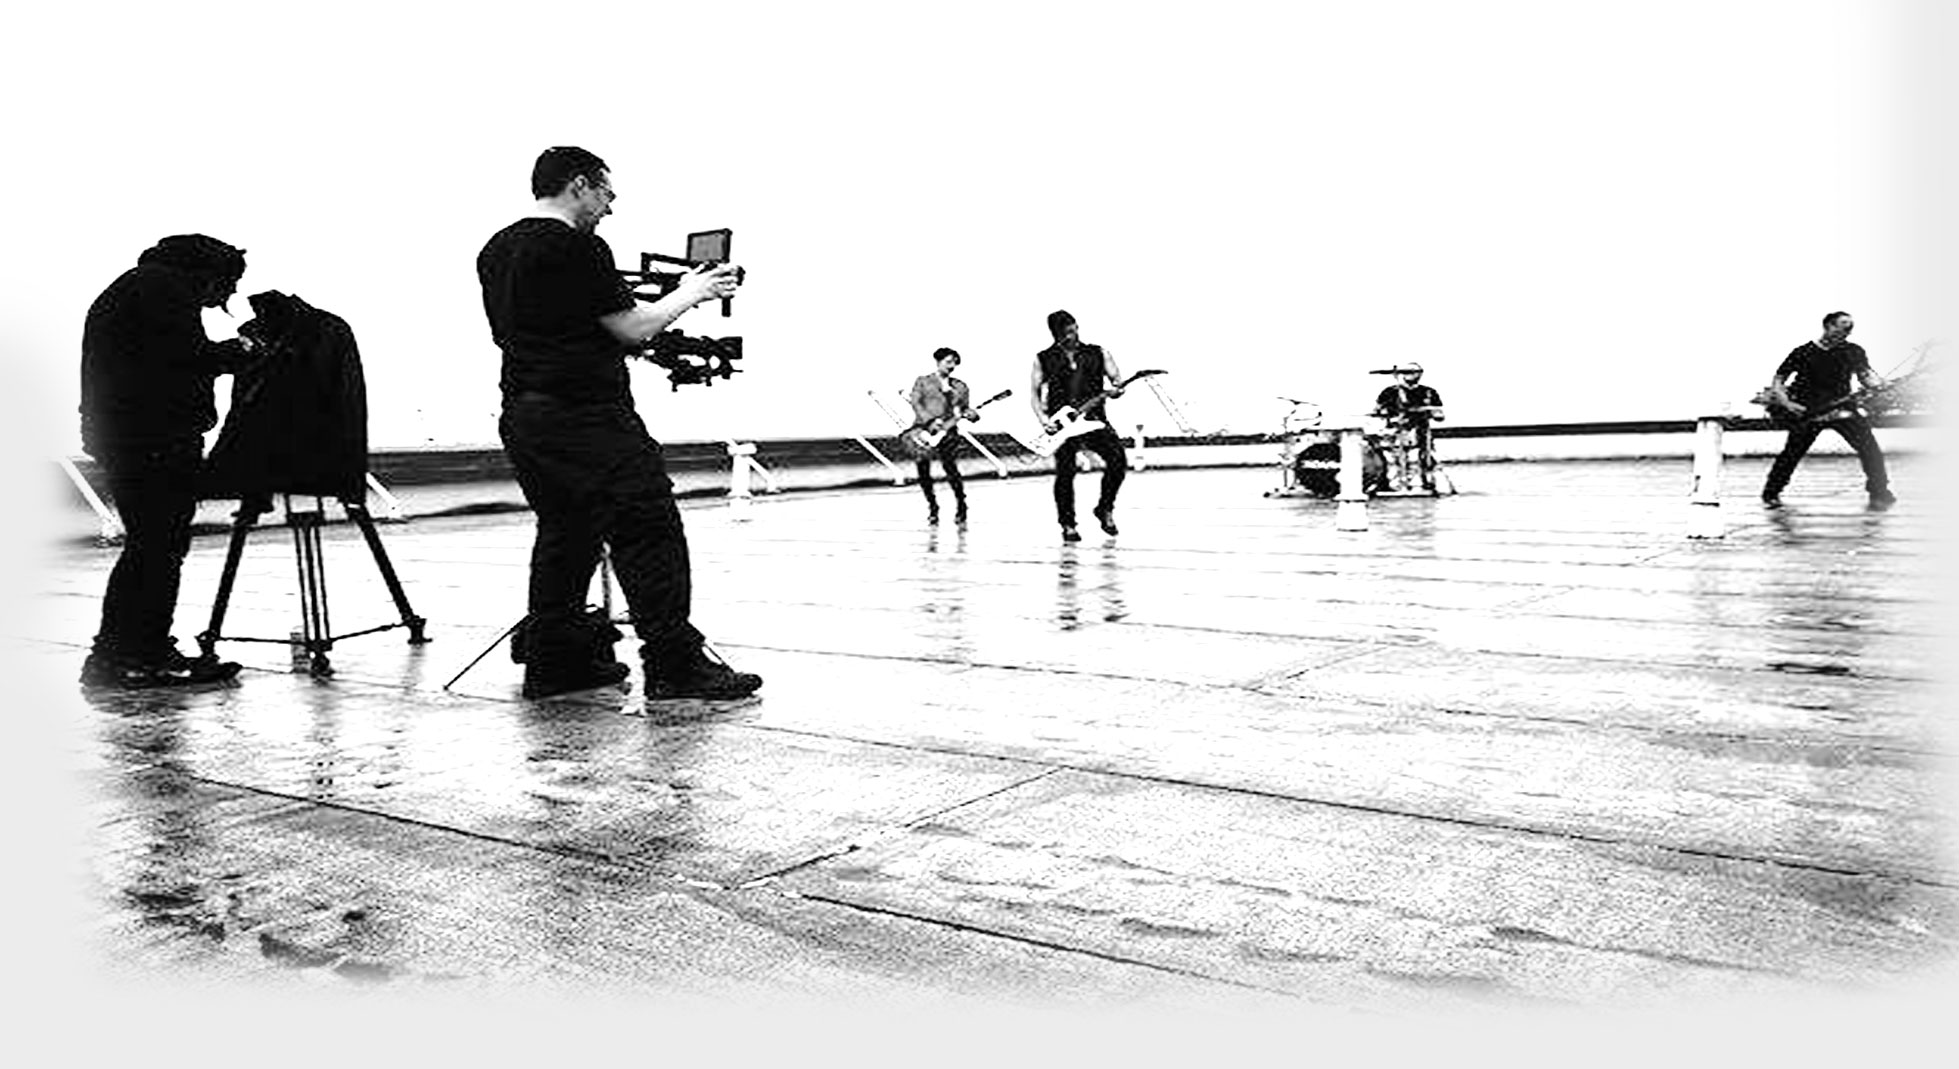 Tetraknot Filming The Adarna